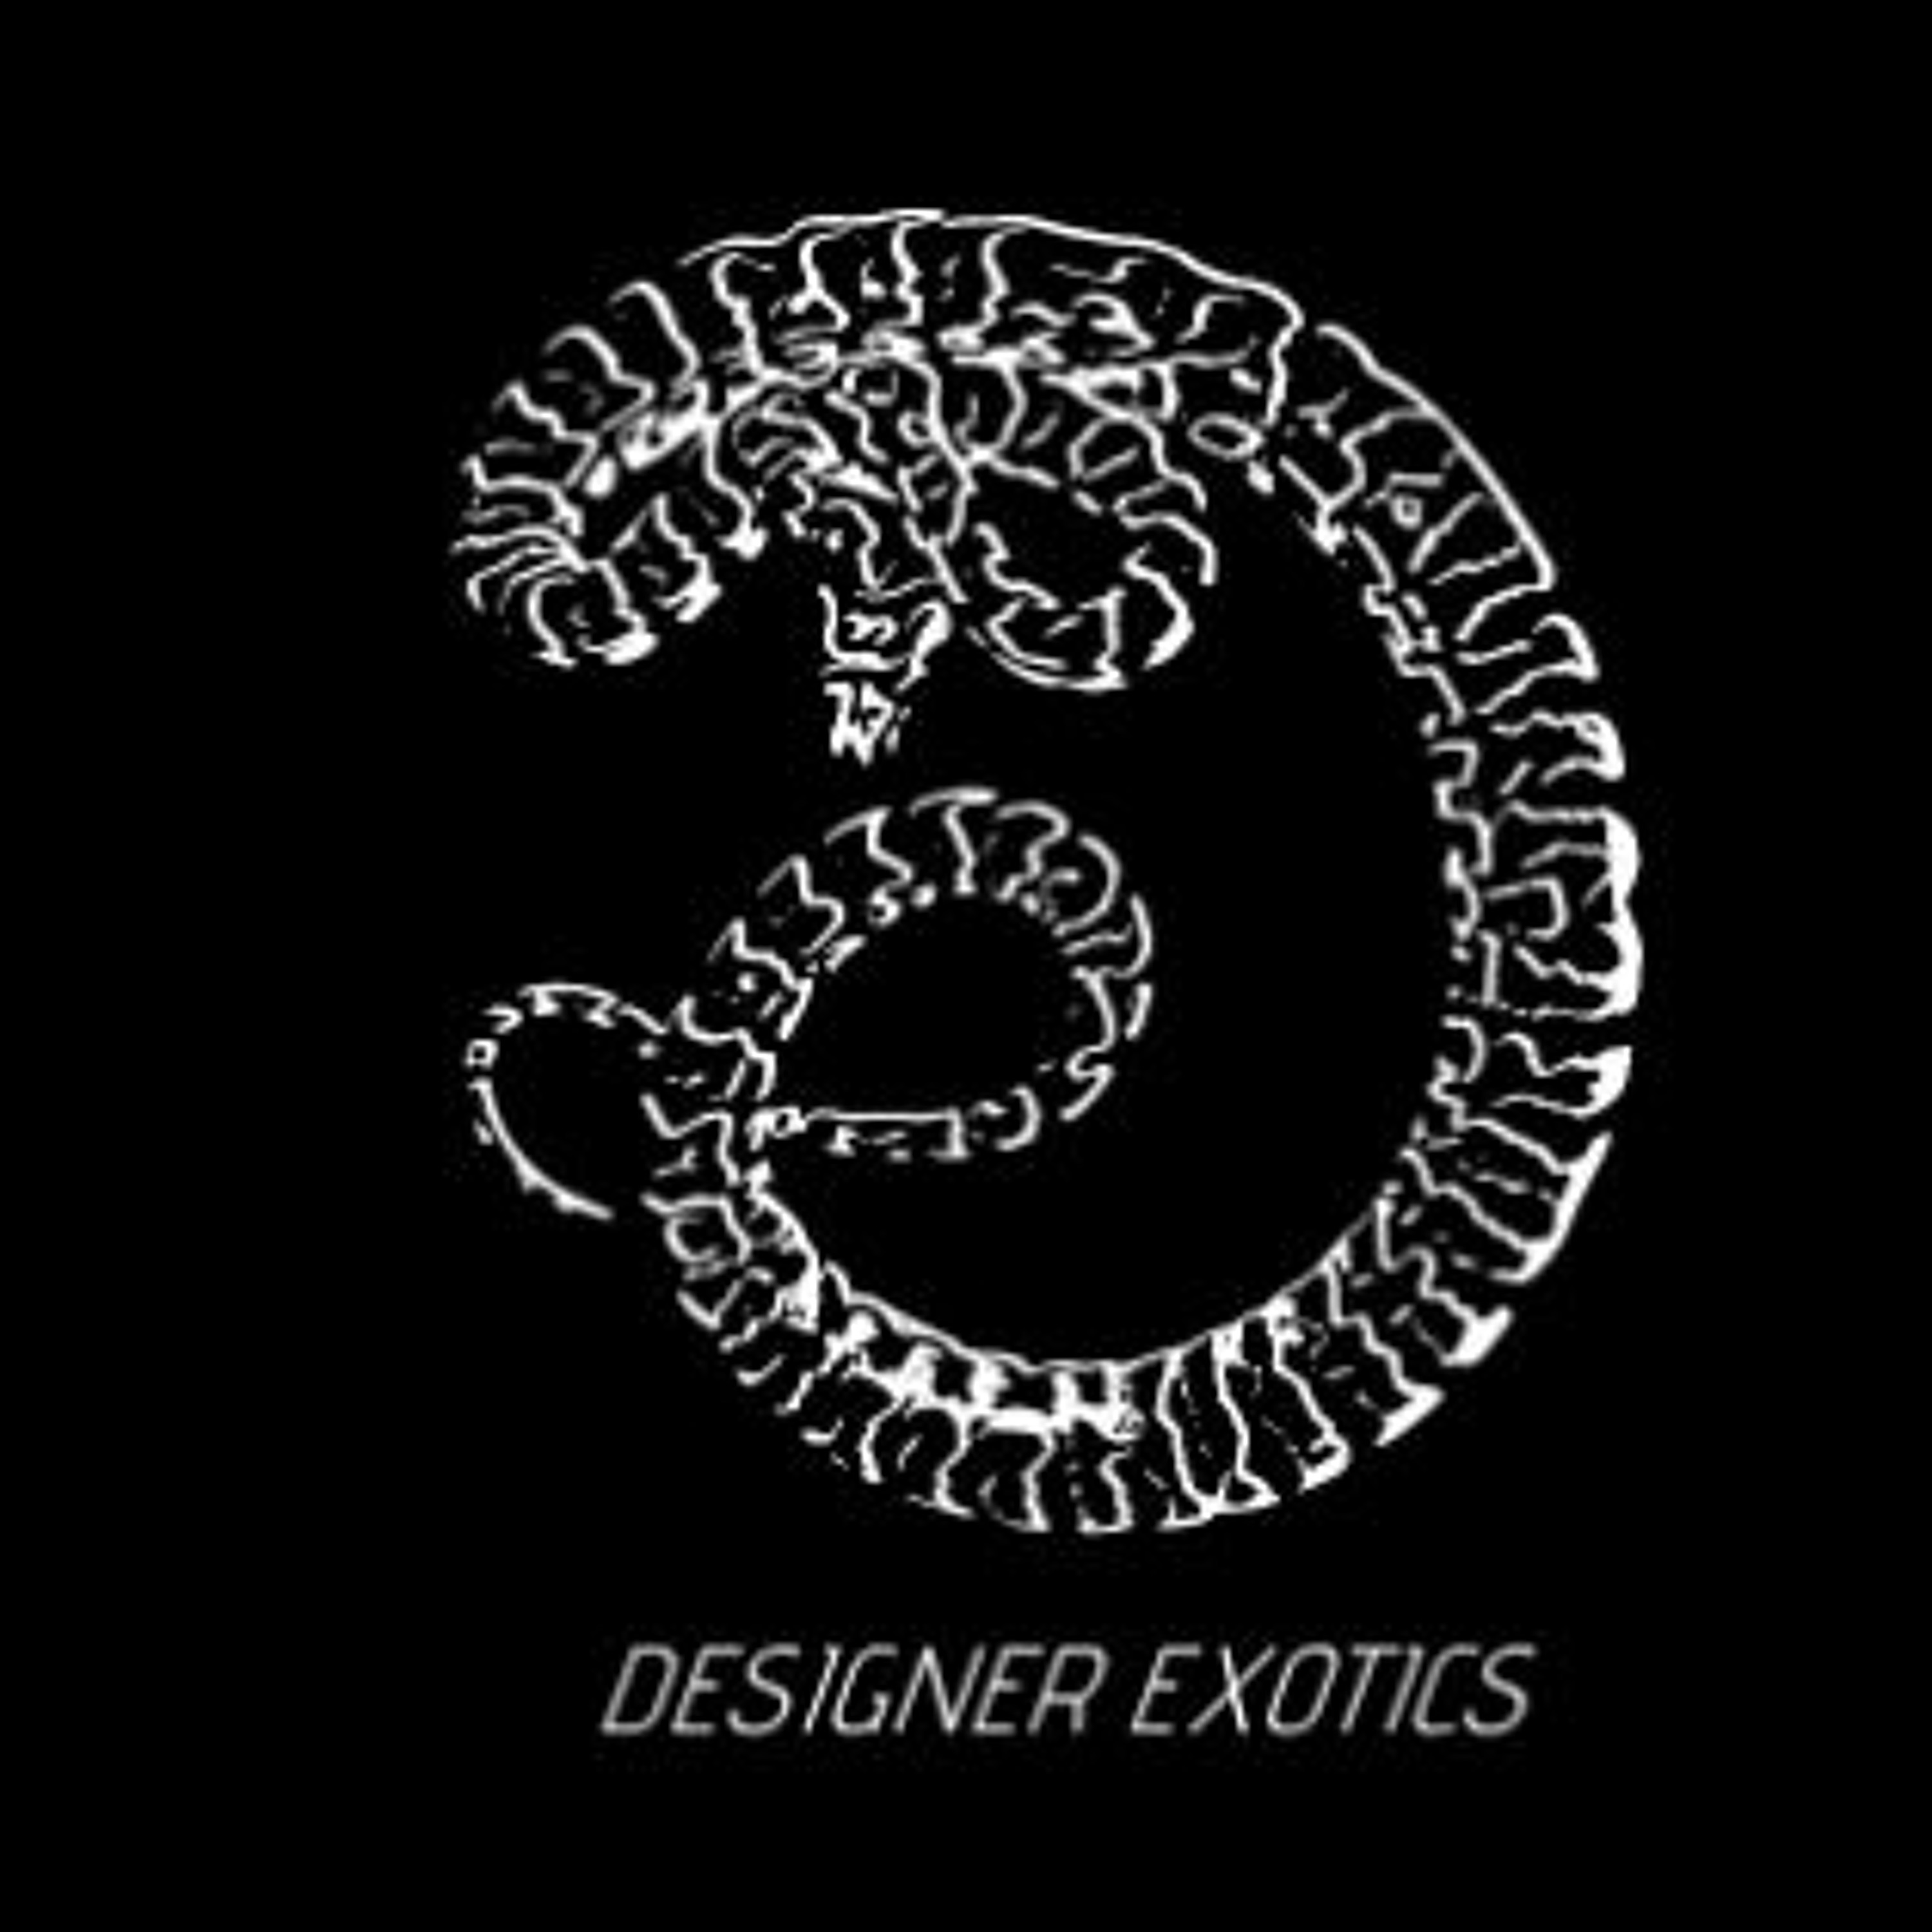 April Justine of Designer Exotics